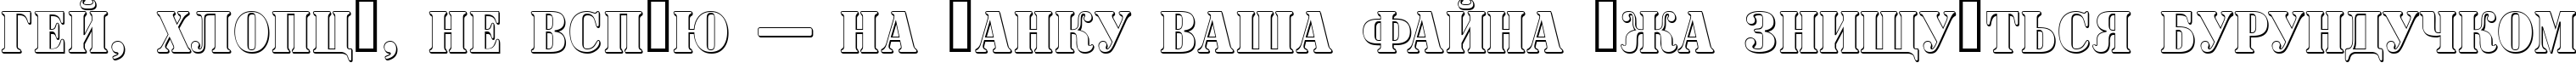 Пример написания шрифтом a_SignboardTitulNrSh текста на украинском